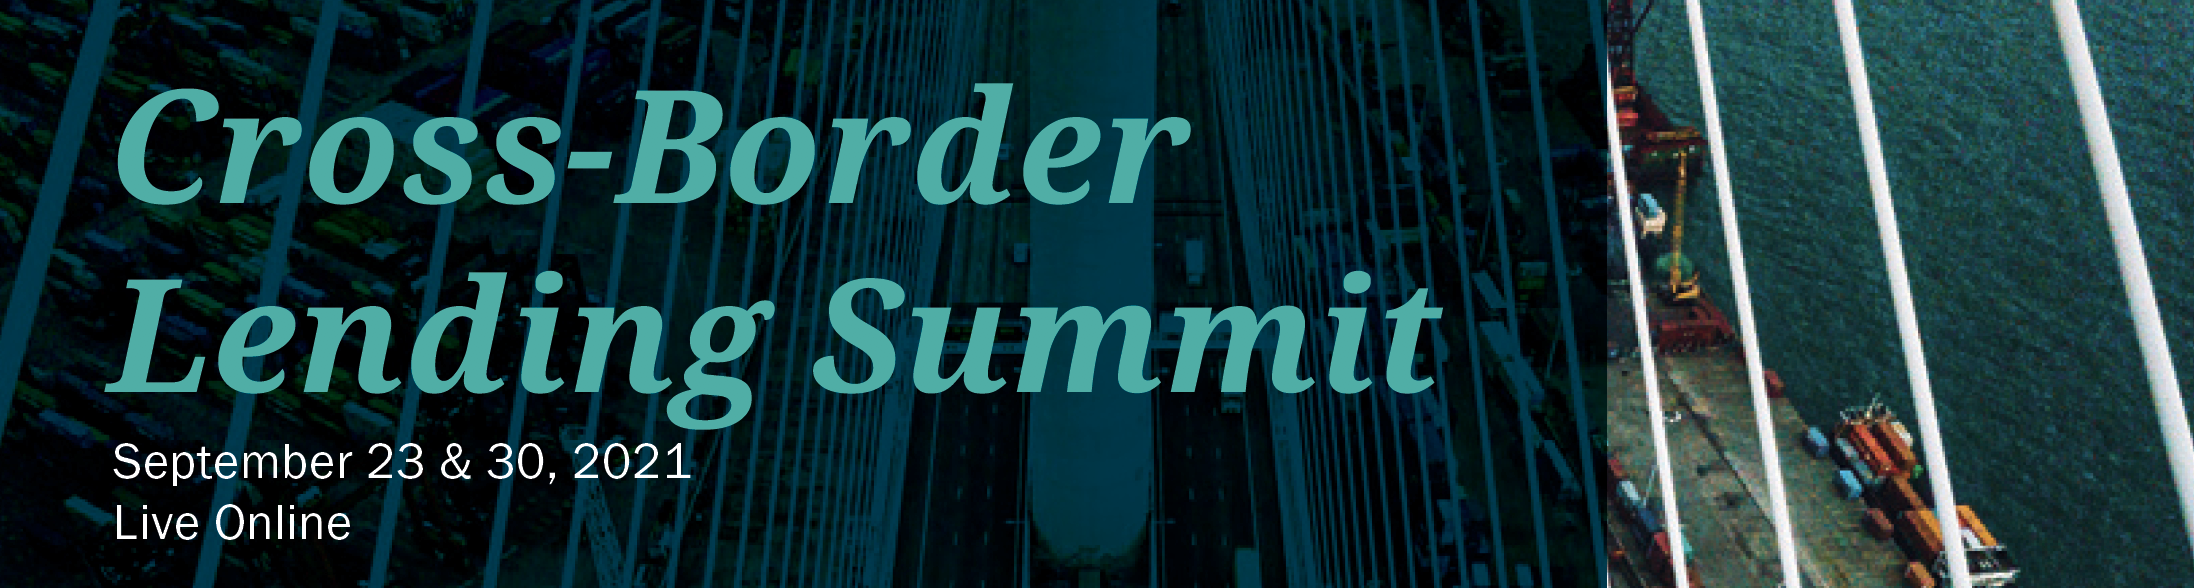 SFNet's Cross-Border Lending Summit logo